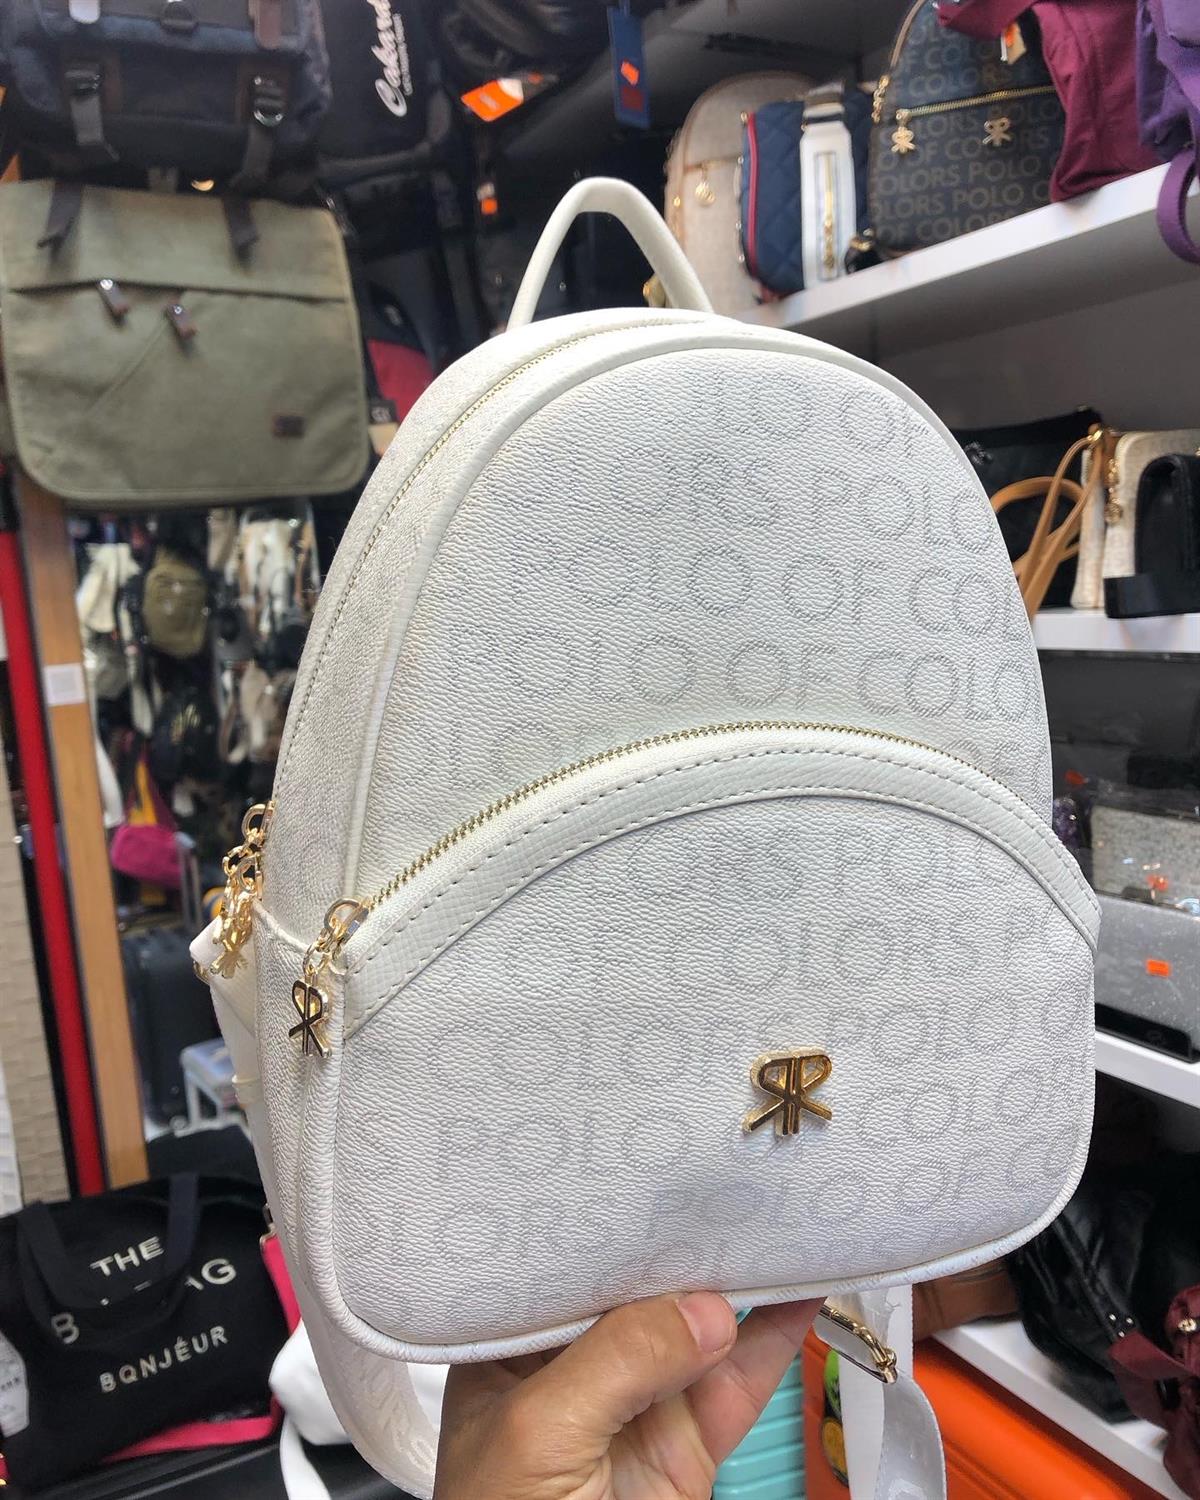 İm Polo Kadın sırt çantası küçük boy çanta ebat 27cm20 |elizabell.com.tr